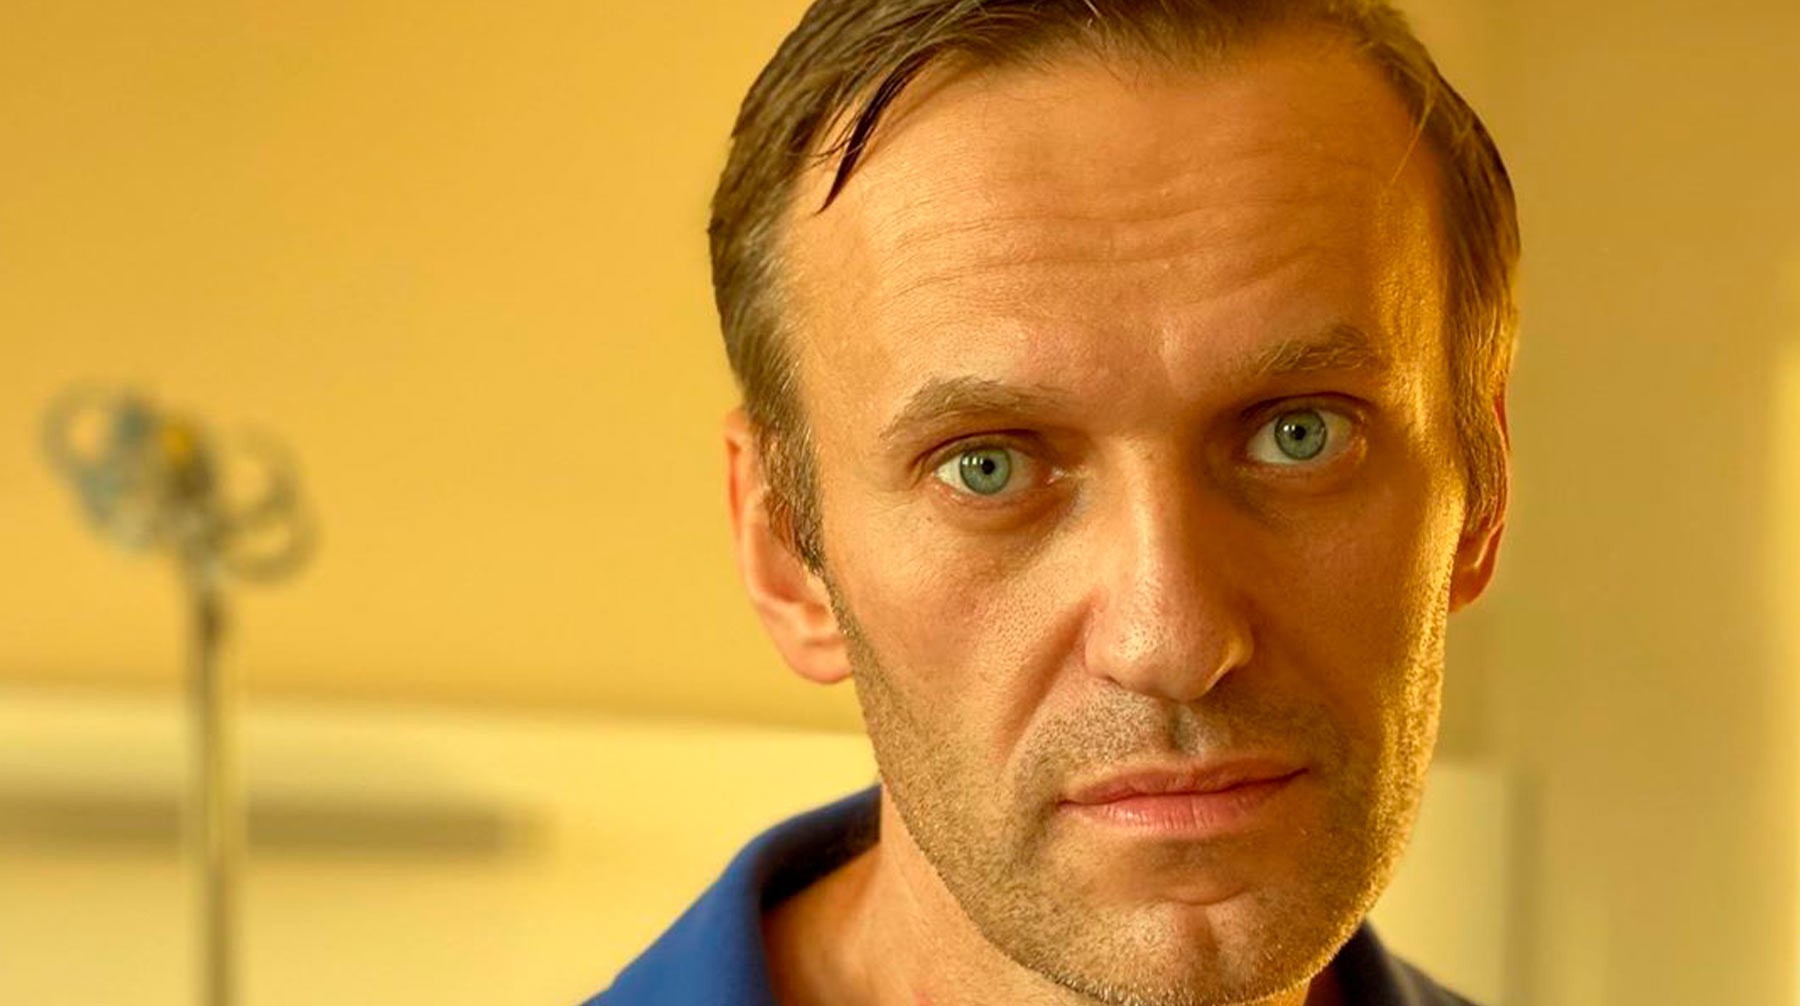 Омские врачи назвали выдумкой заявления Навального о введении атропина в скорой